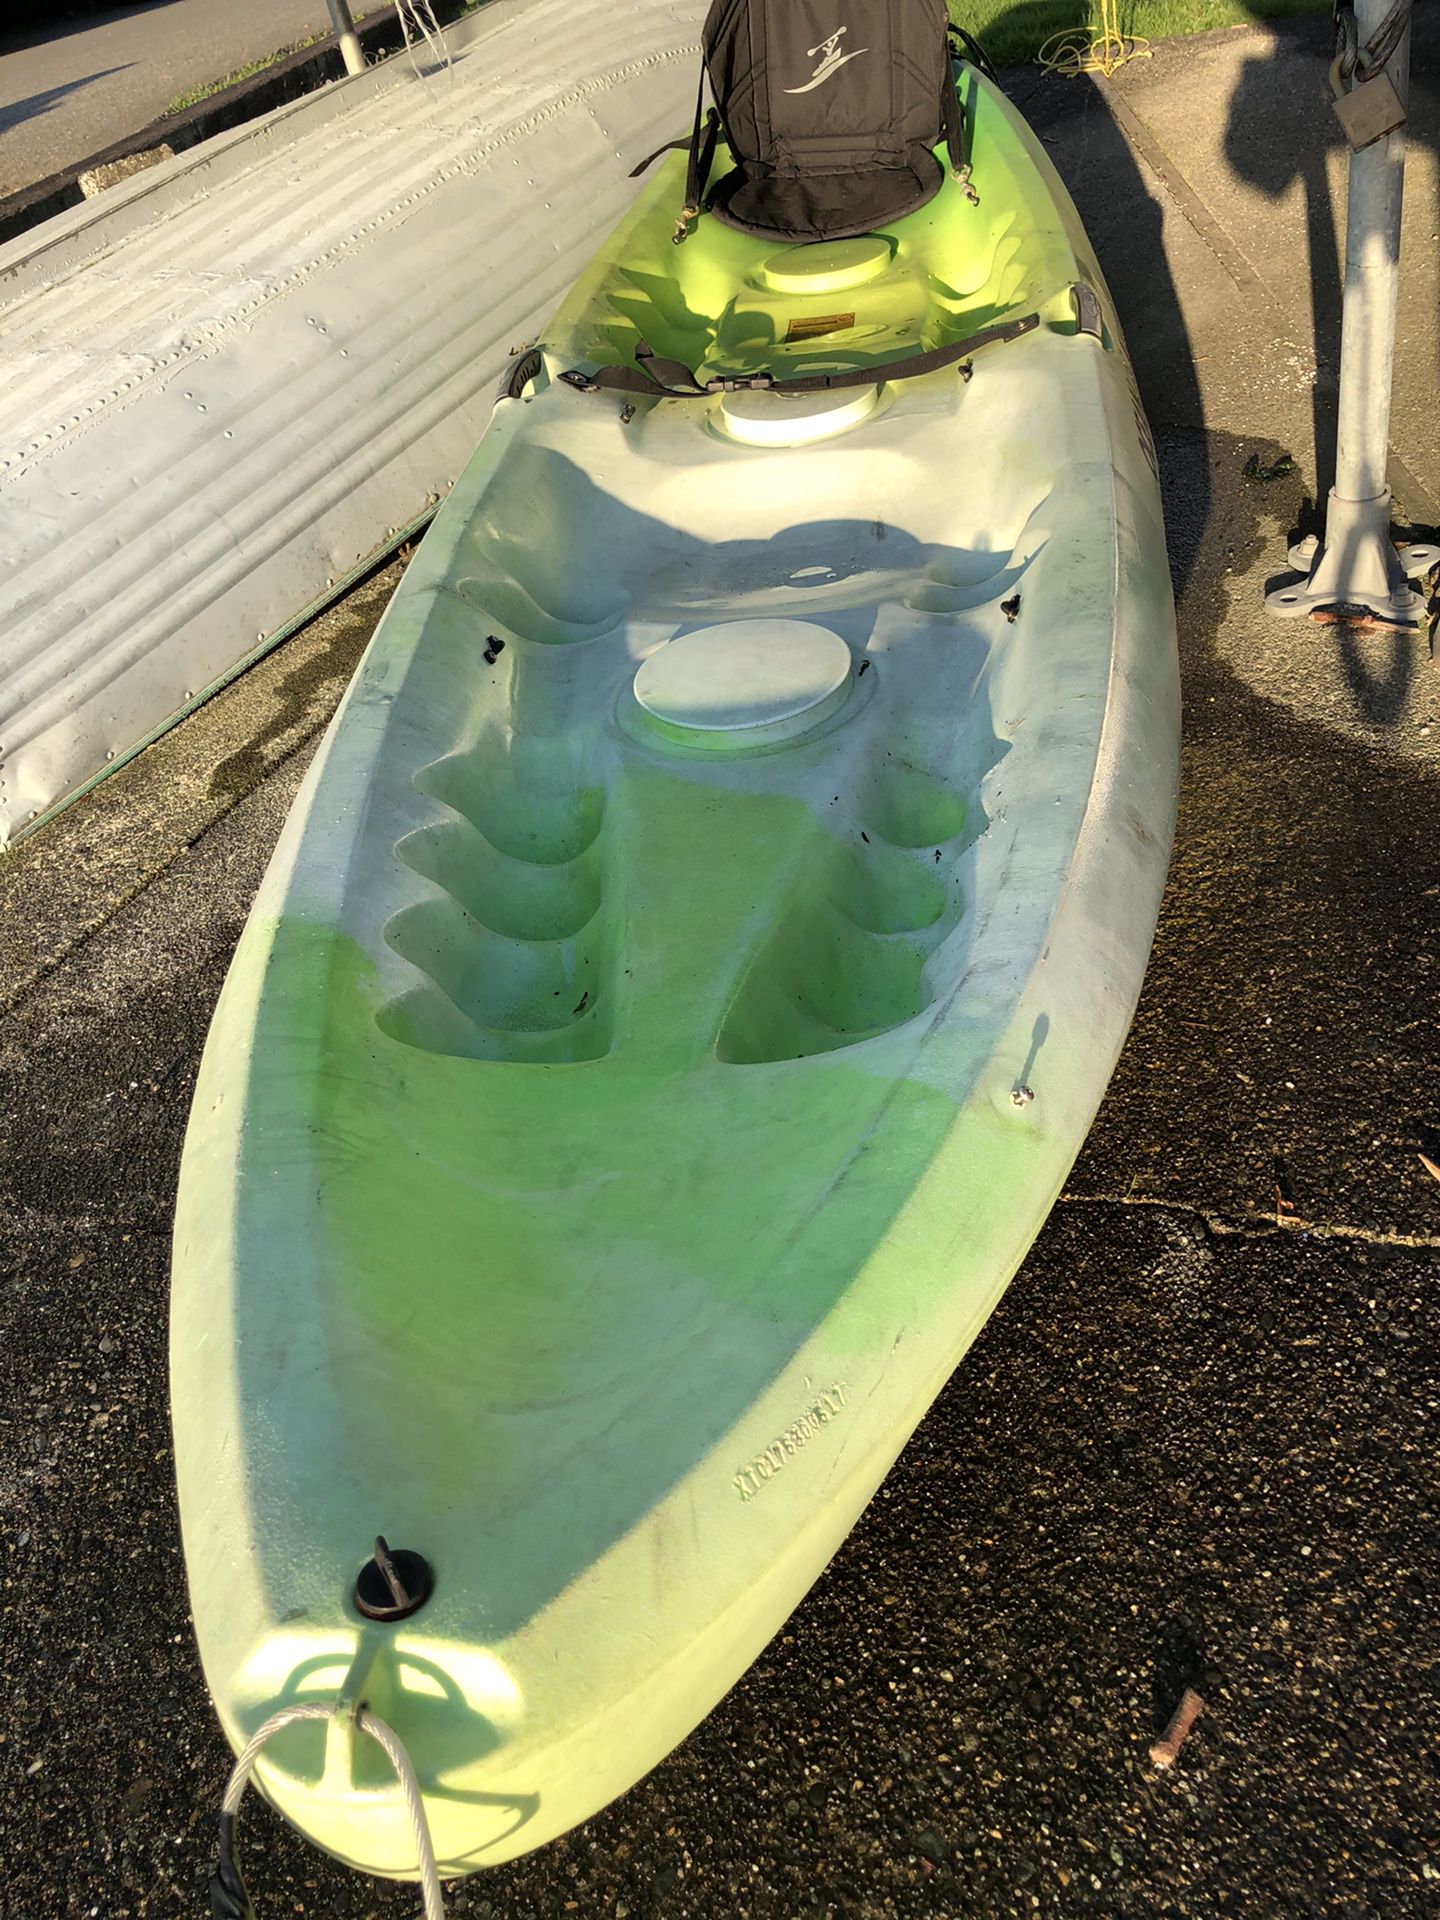 Malibu Two Ocean Kayak